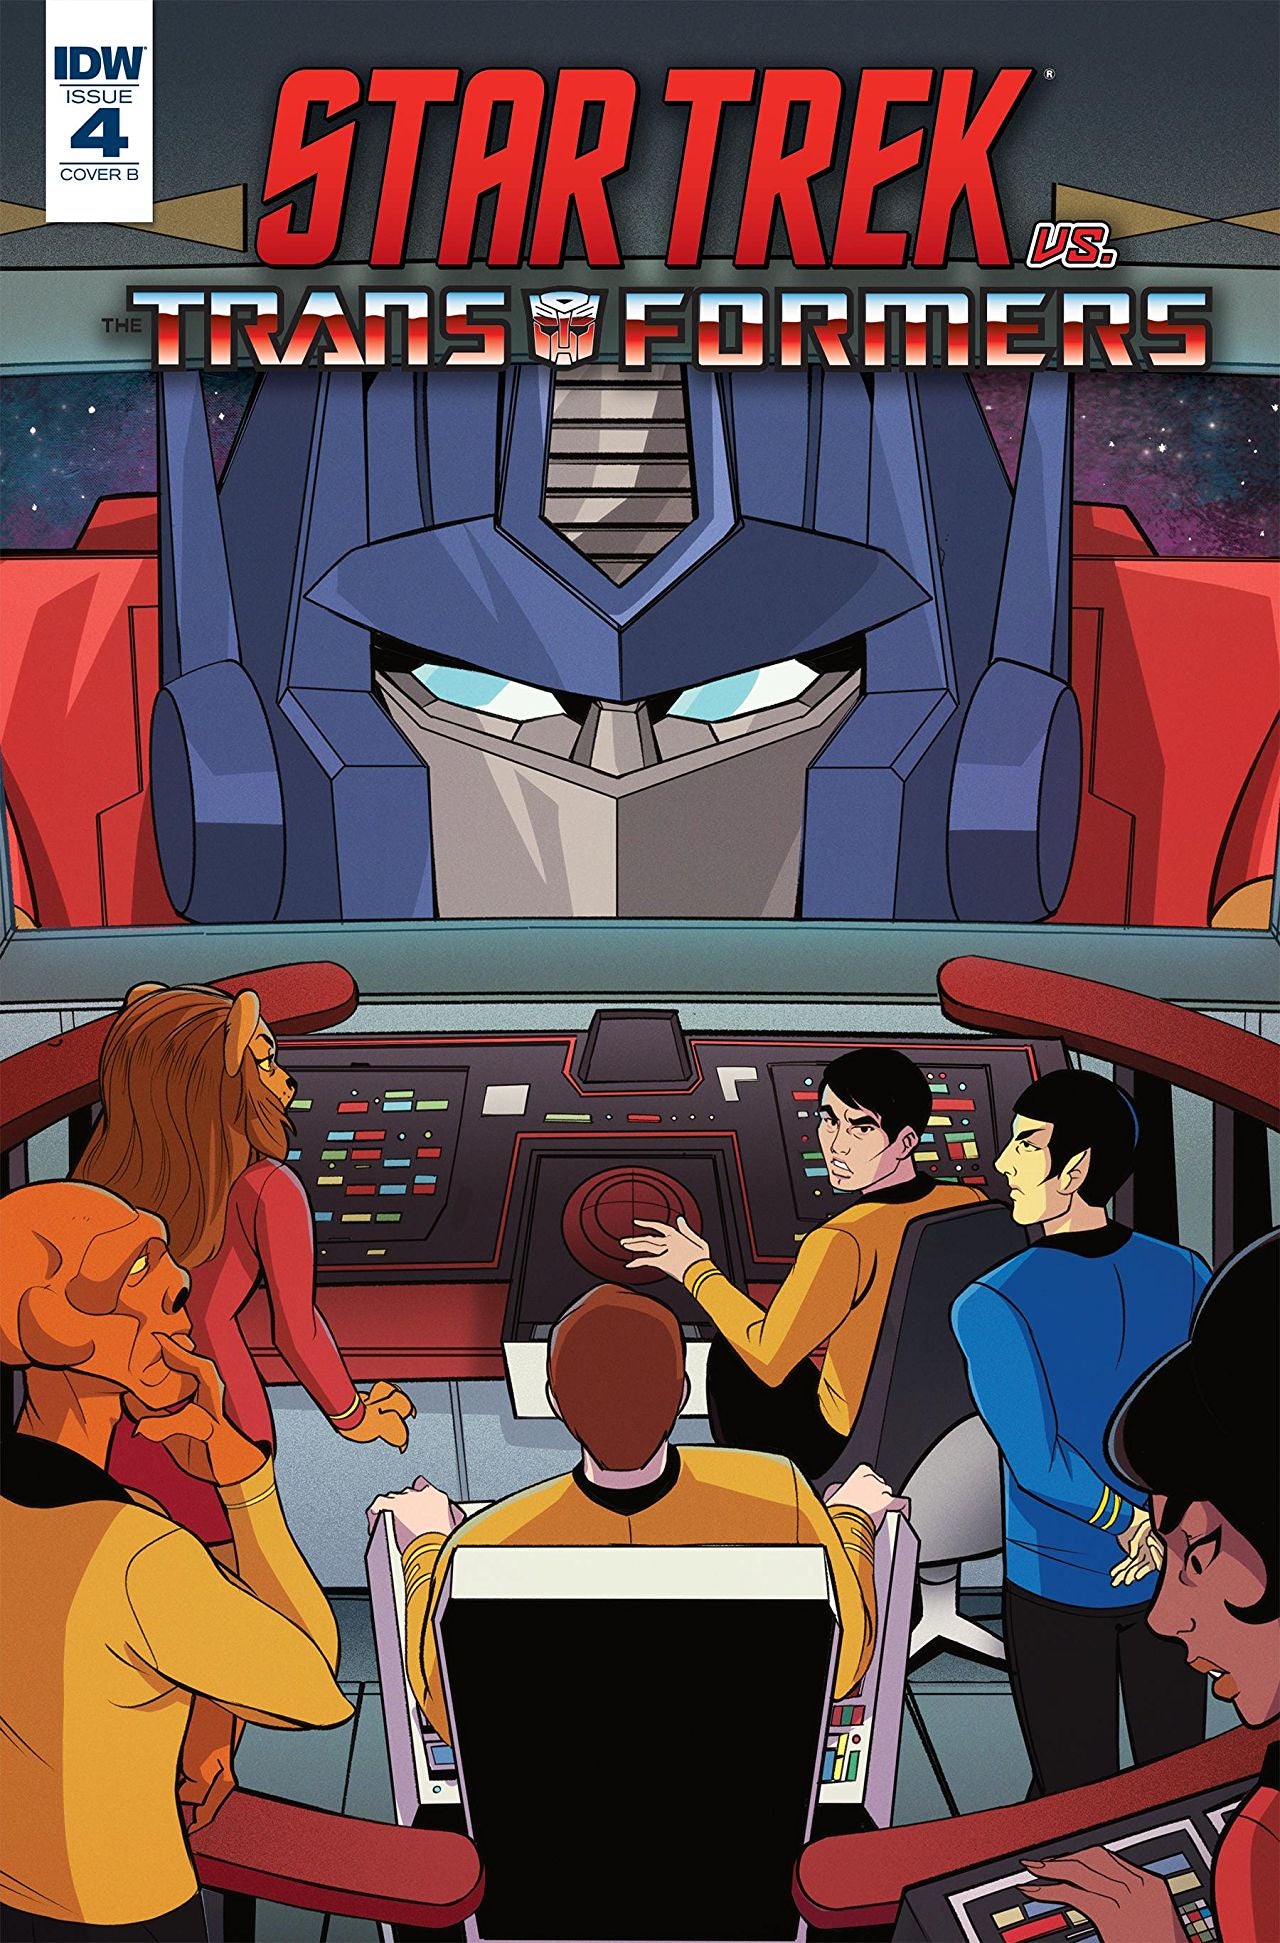 transformers comics 2018